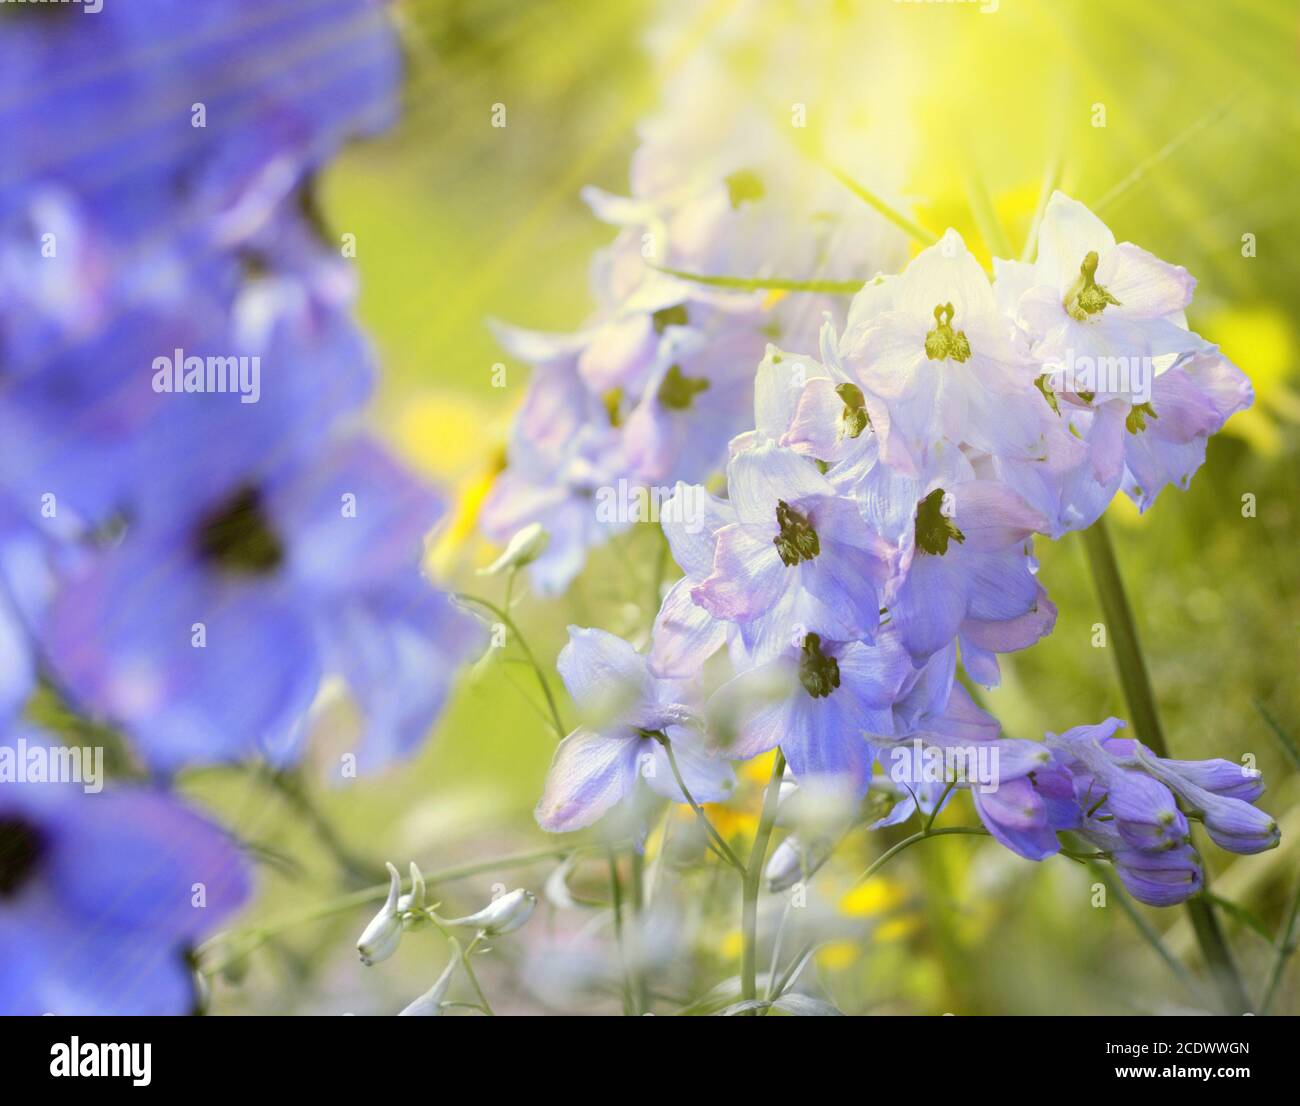 Blaue Delphinium Blume in einem Garten an einem hellen sonnigen Tag. Natur, Schönheit, Freizeit, Hintergrund. Stockfoto